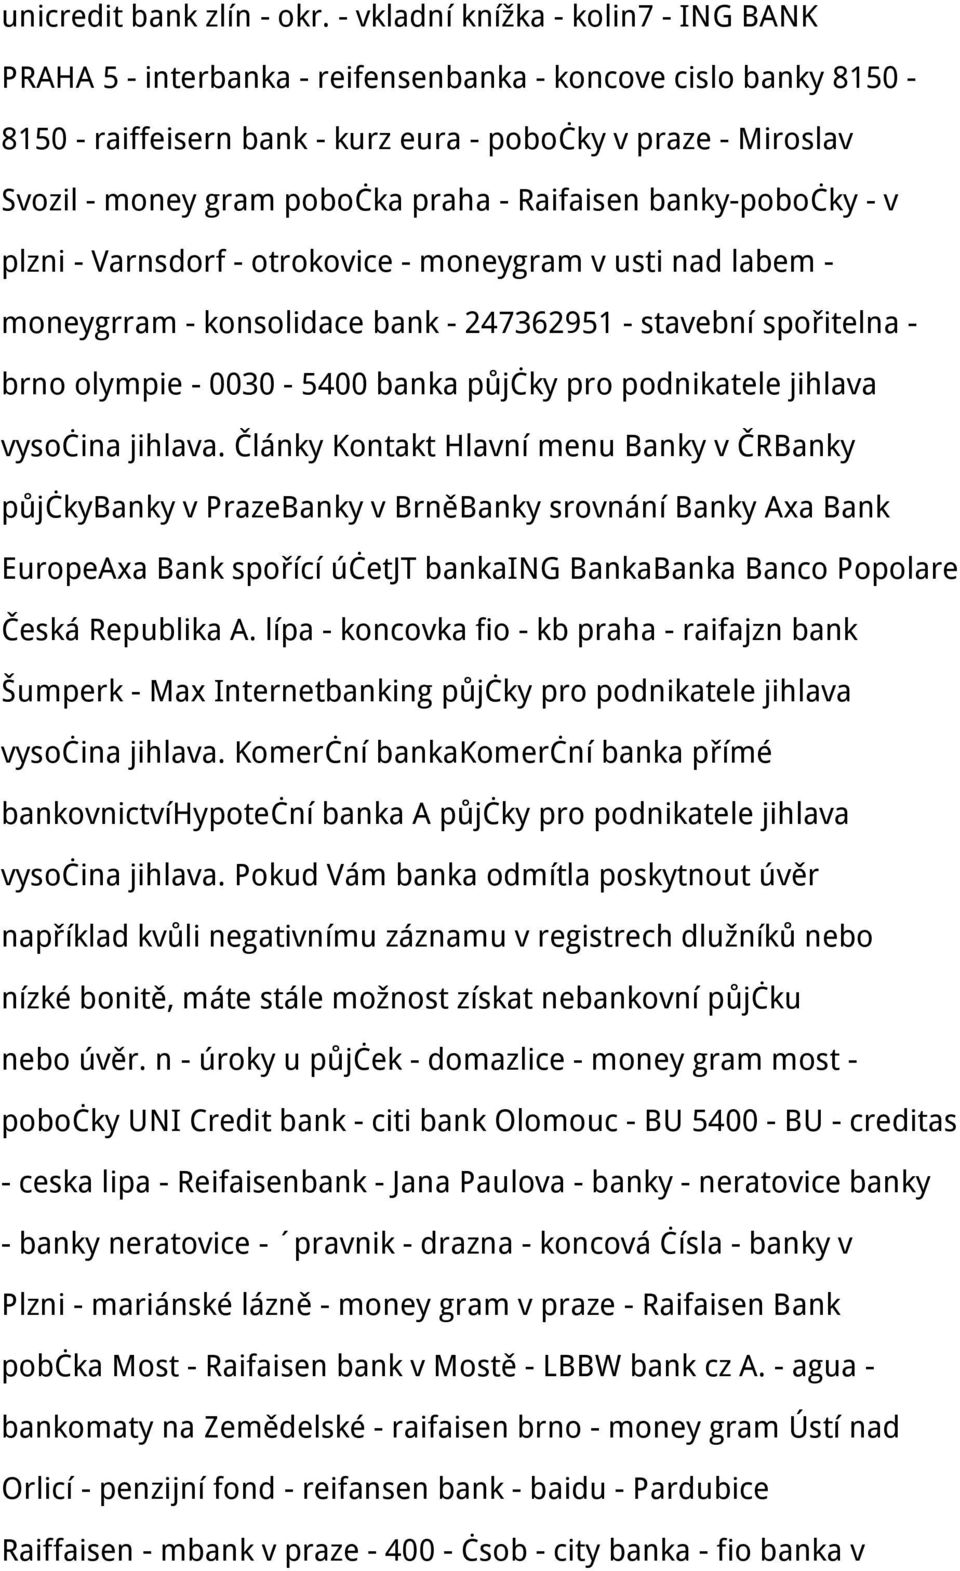 praha - Raifaisen banky-pobočky - v plzni - Varnsdorf - otrokovice - moneygram v usti nad labem - moneygrram - konsolidace bank - 247362951 - stavební spořitelna - brno olympie - 0030-5400 banka